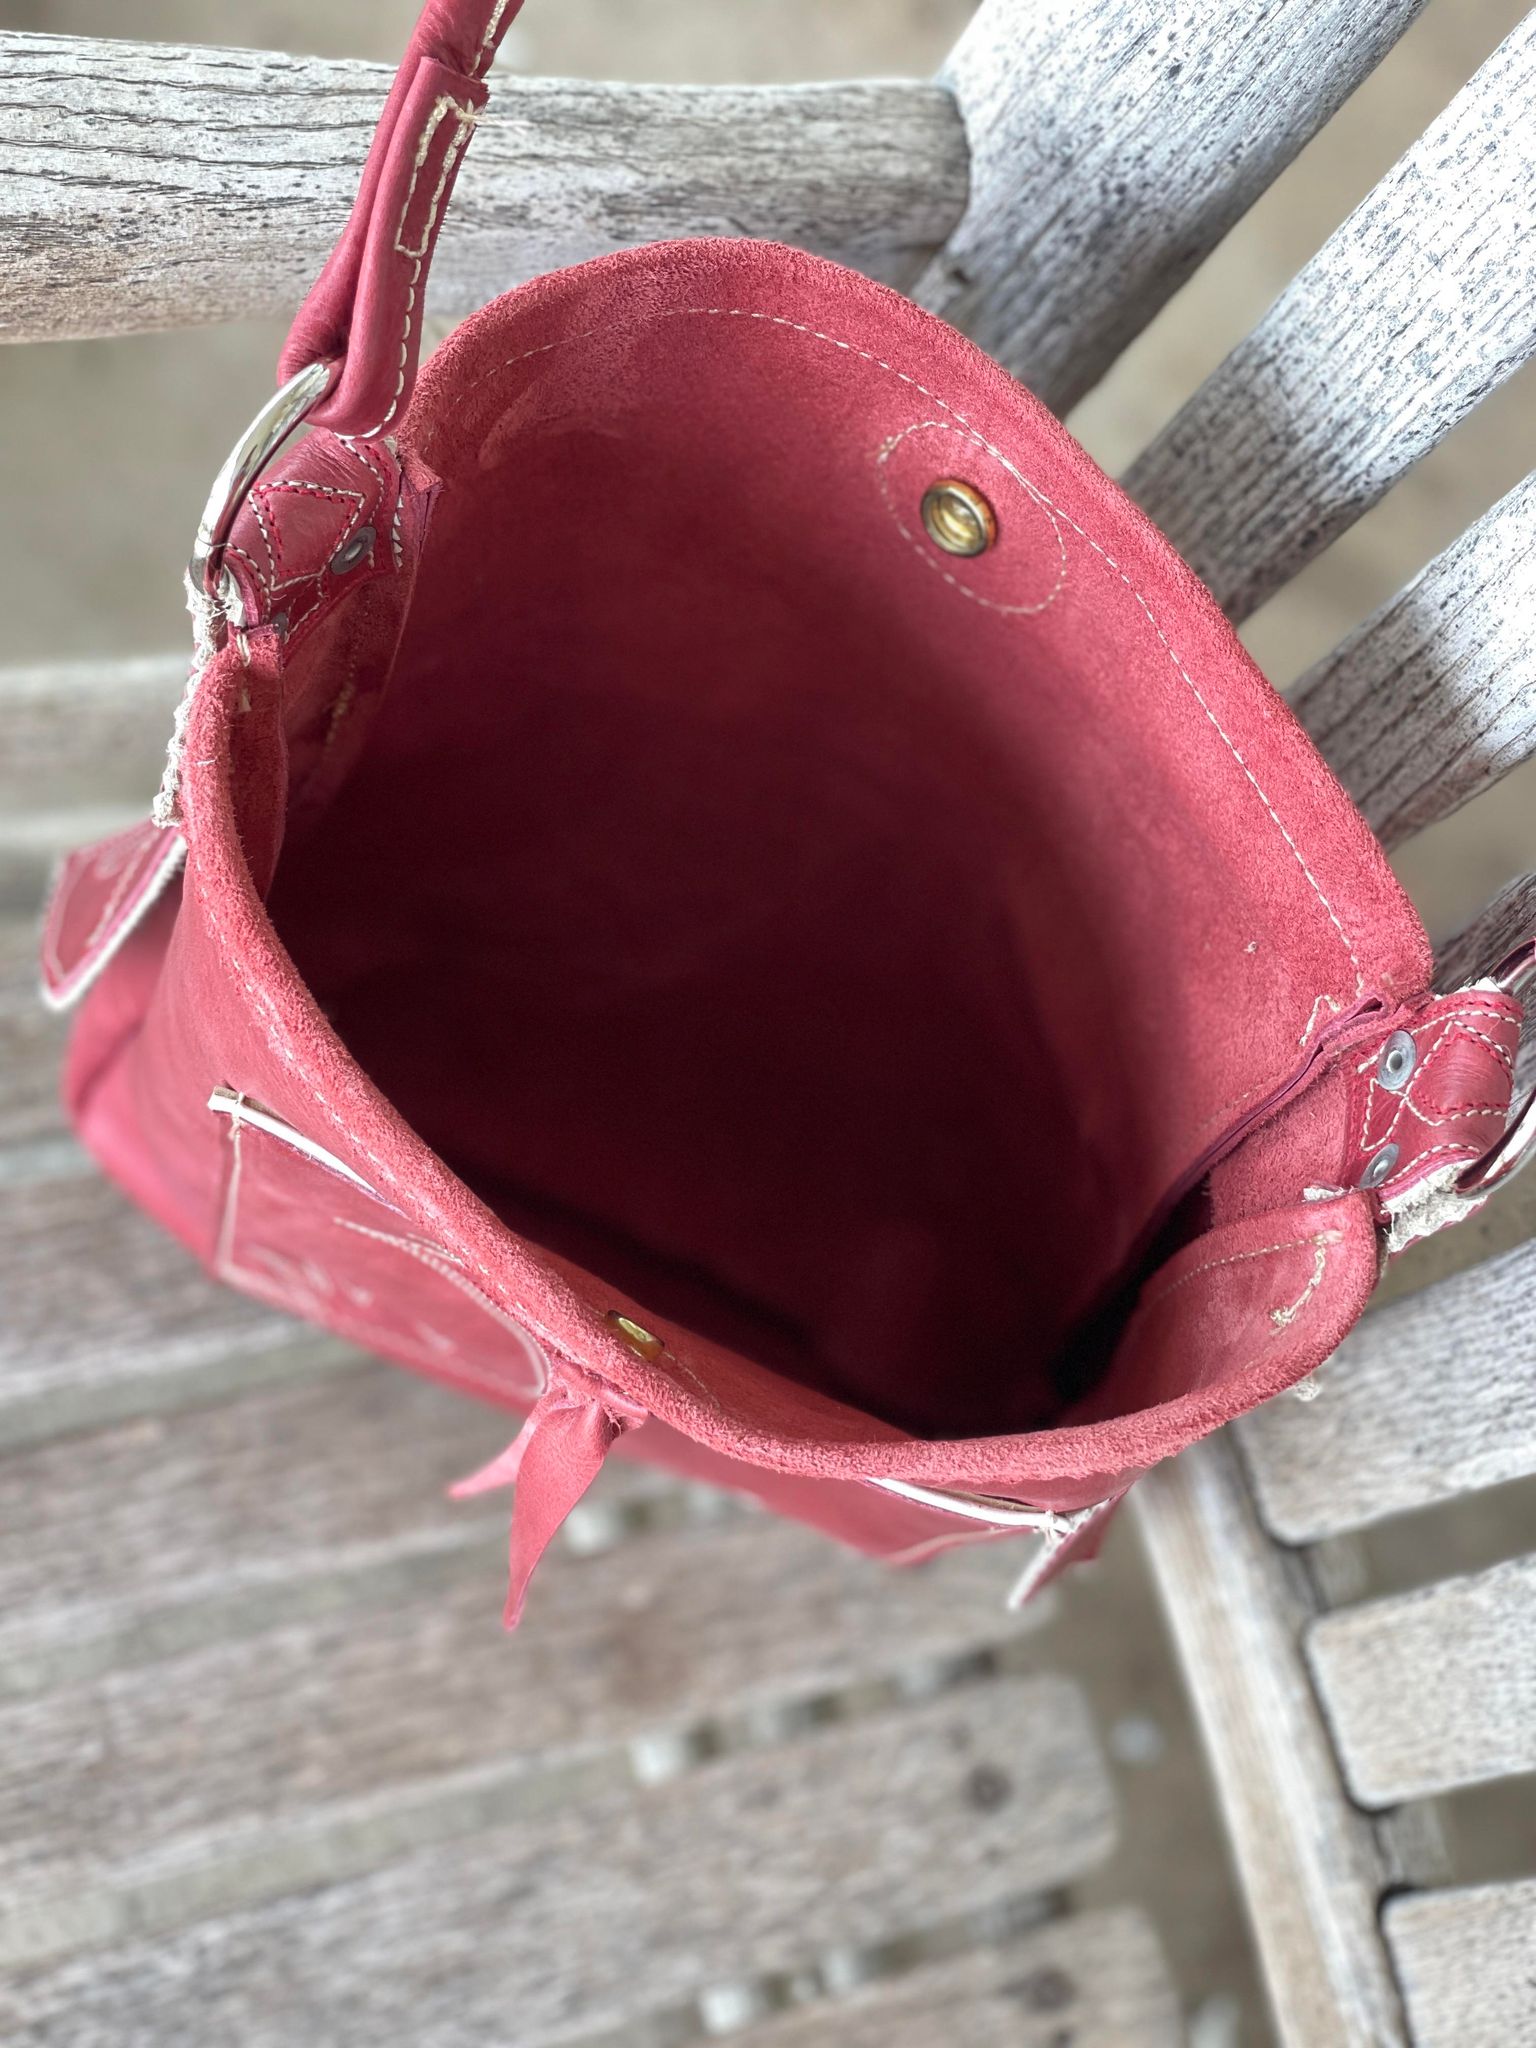 Handmade Boot Inspired Bag